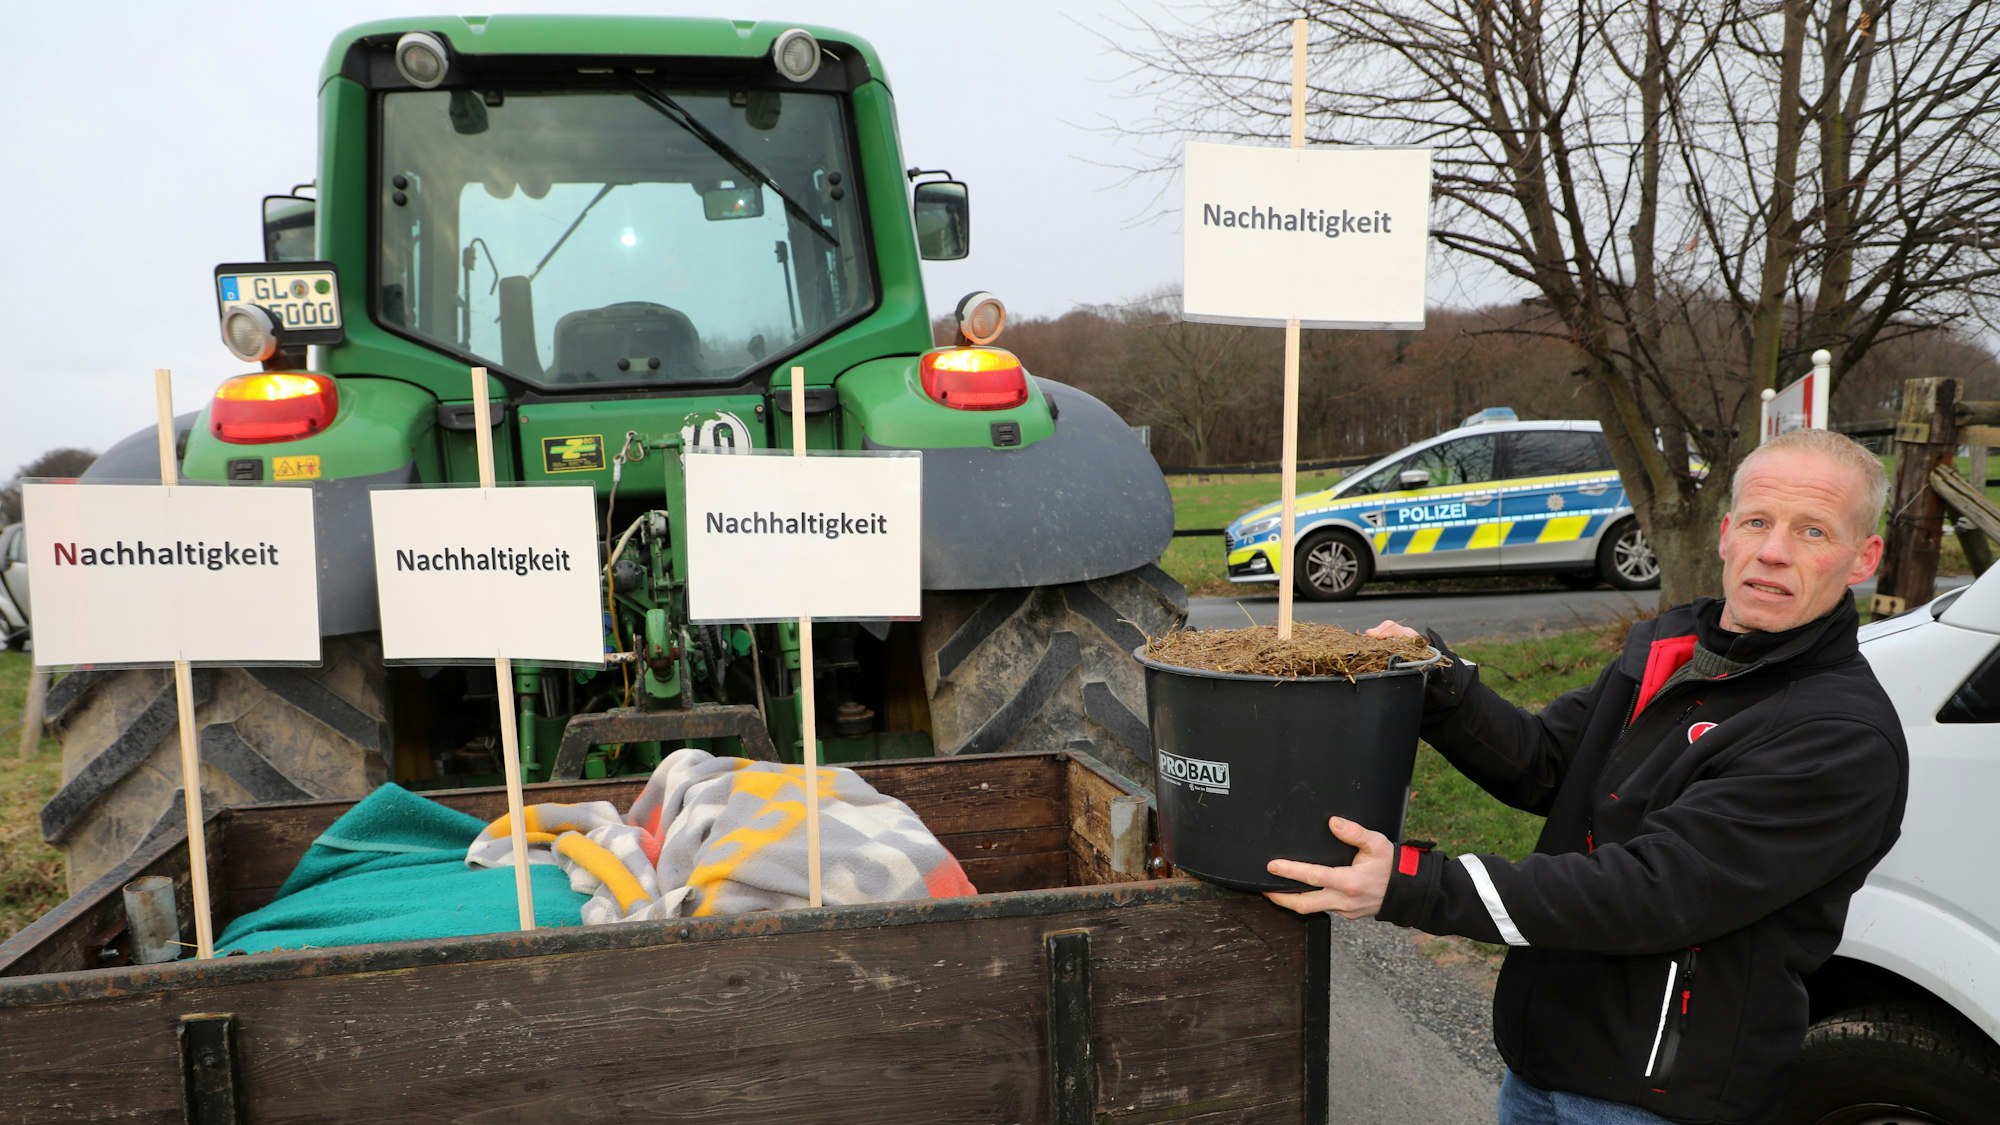 Landwirt Markus Freihoff aus Kürten zeigt Mistkübel mit Schildern auf denen „Nachhaltigkeit“ steht.